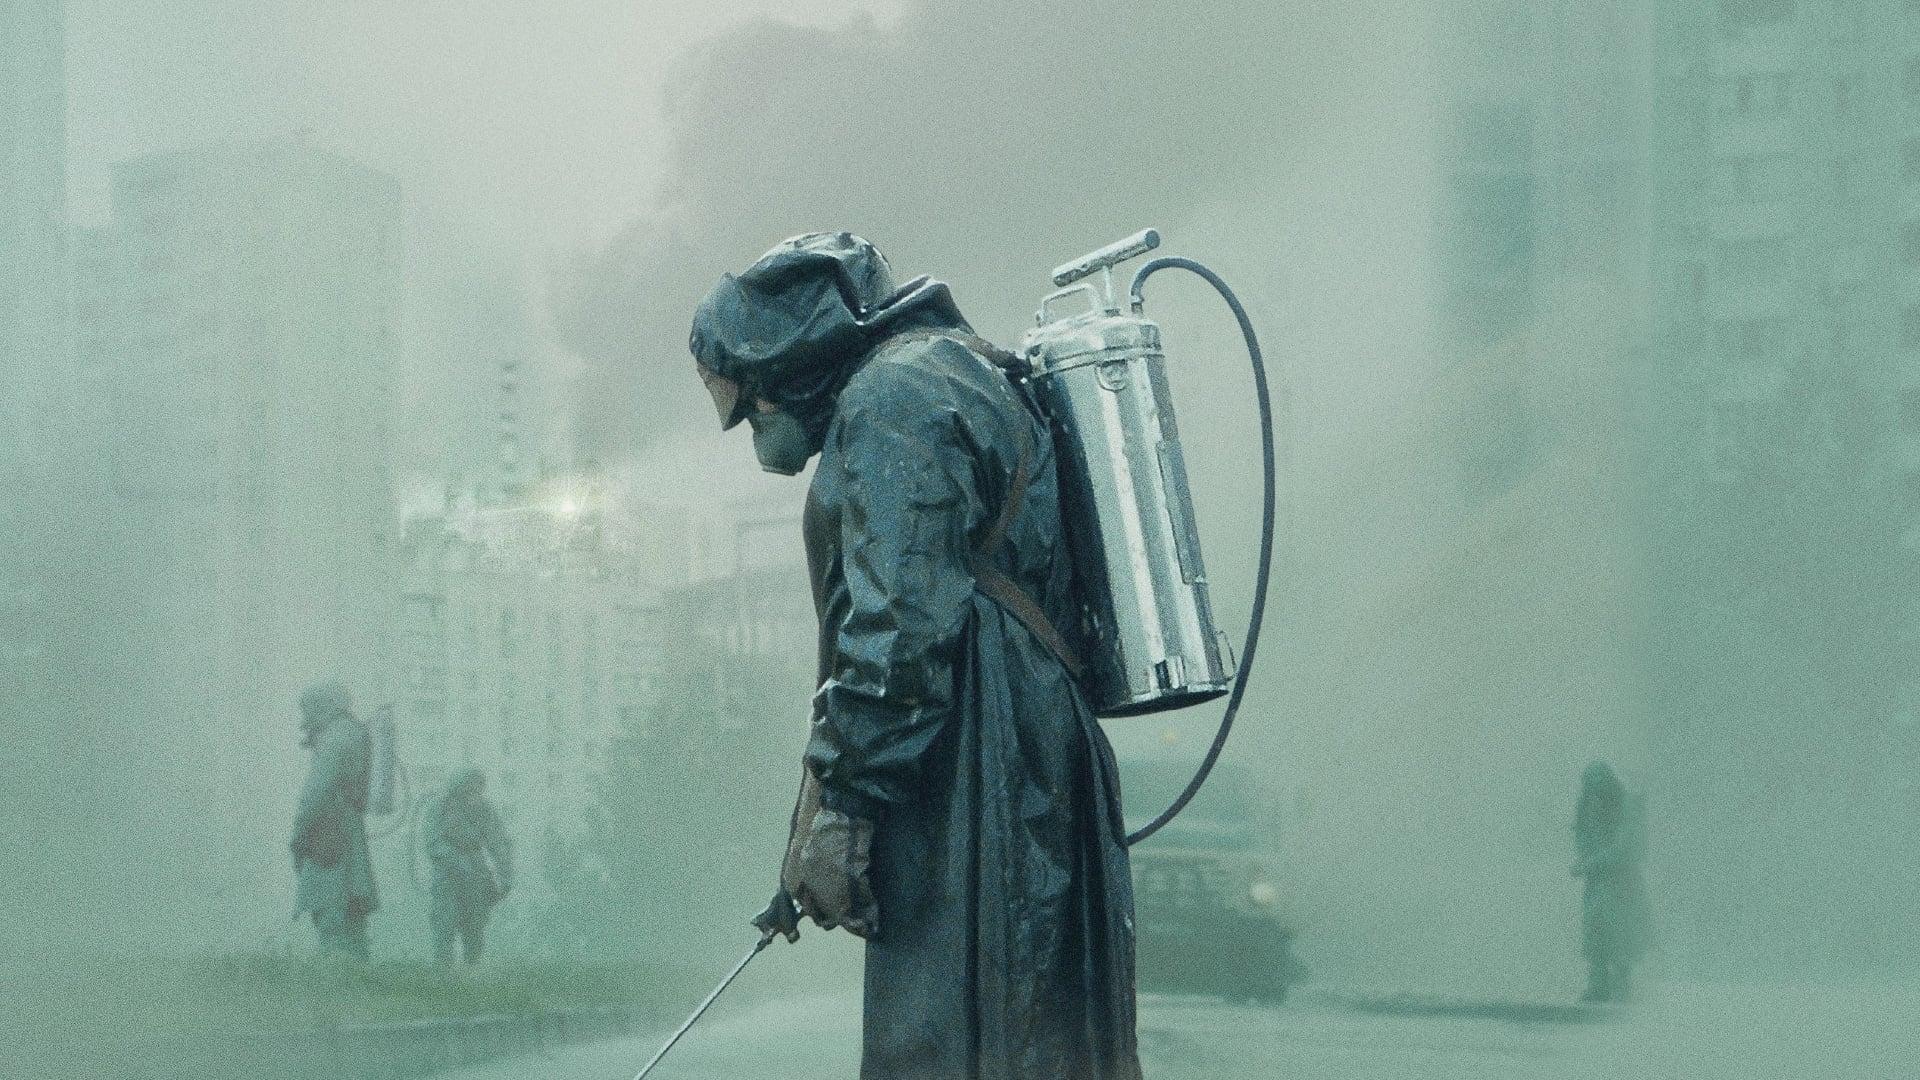 Chernobyl backdrop